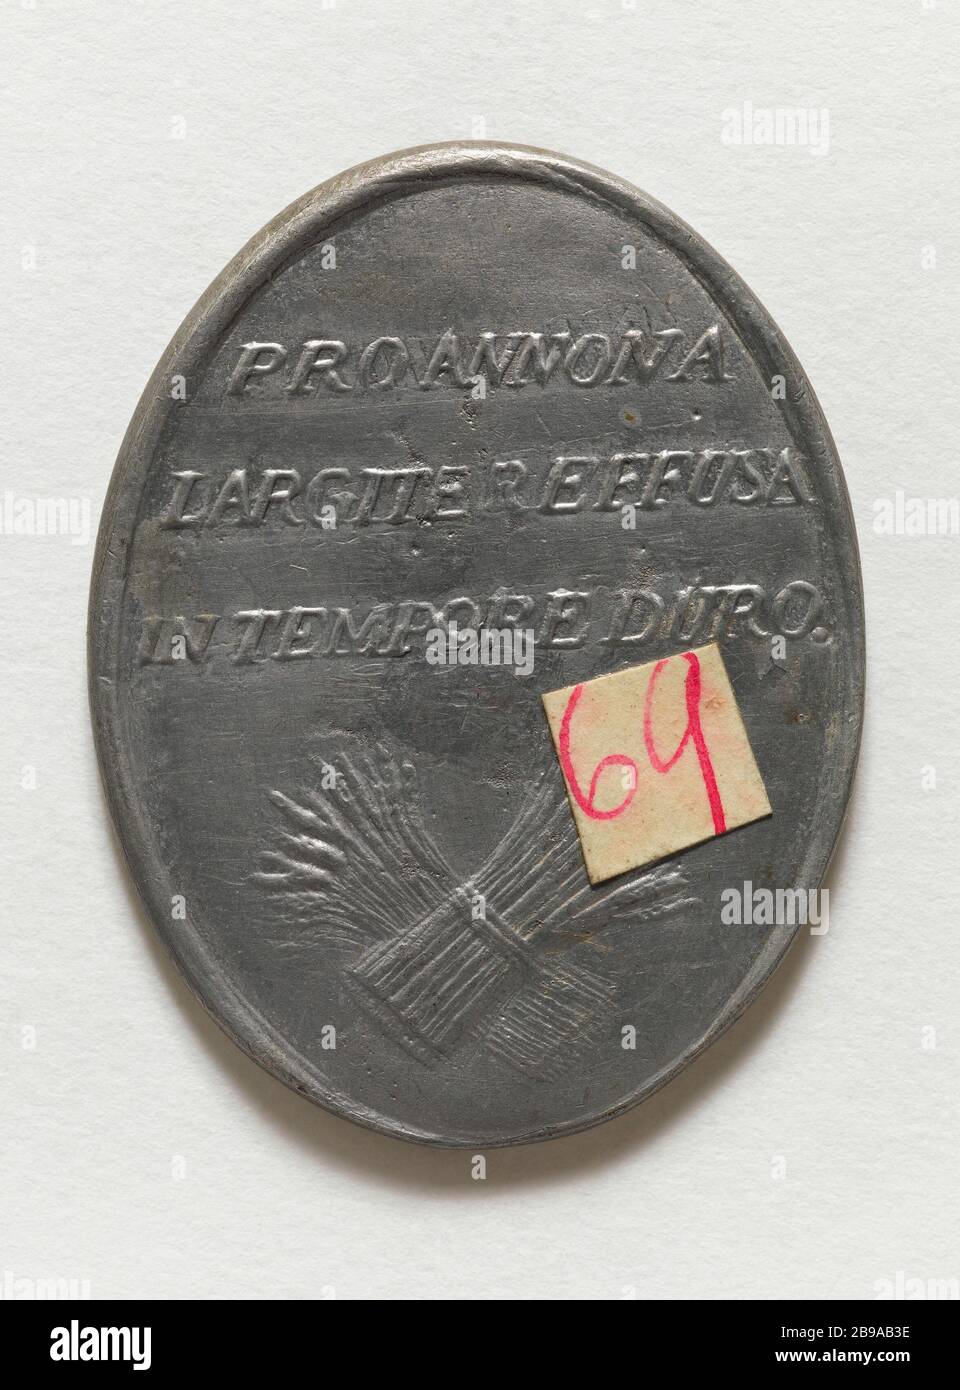 MEDAILLE DER STADT NICOLAS A MEAUX TRONCHON, INHABER MARTIN EINE LÜCKE IN ANERKENNUNG DER VON IHM ANGEBOTENEN GETREIDEERLEICHTERUNGEN ZEIT DER KNAPPHEIT, 6. NOVEMBER 1789 ANONYME. Médaille décernée par la ville de Meaux à Nicolas Tronchon, propriétaire à Fosse Martin, en reconnaissance des secours en grain offerts par lui en temps de disette, 6 novembre 1789. Etain. 1789. Paris, musée Carnavalet. Stockfoto